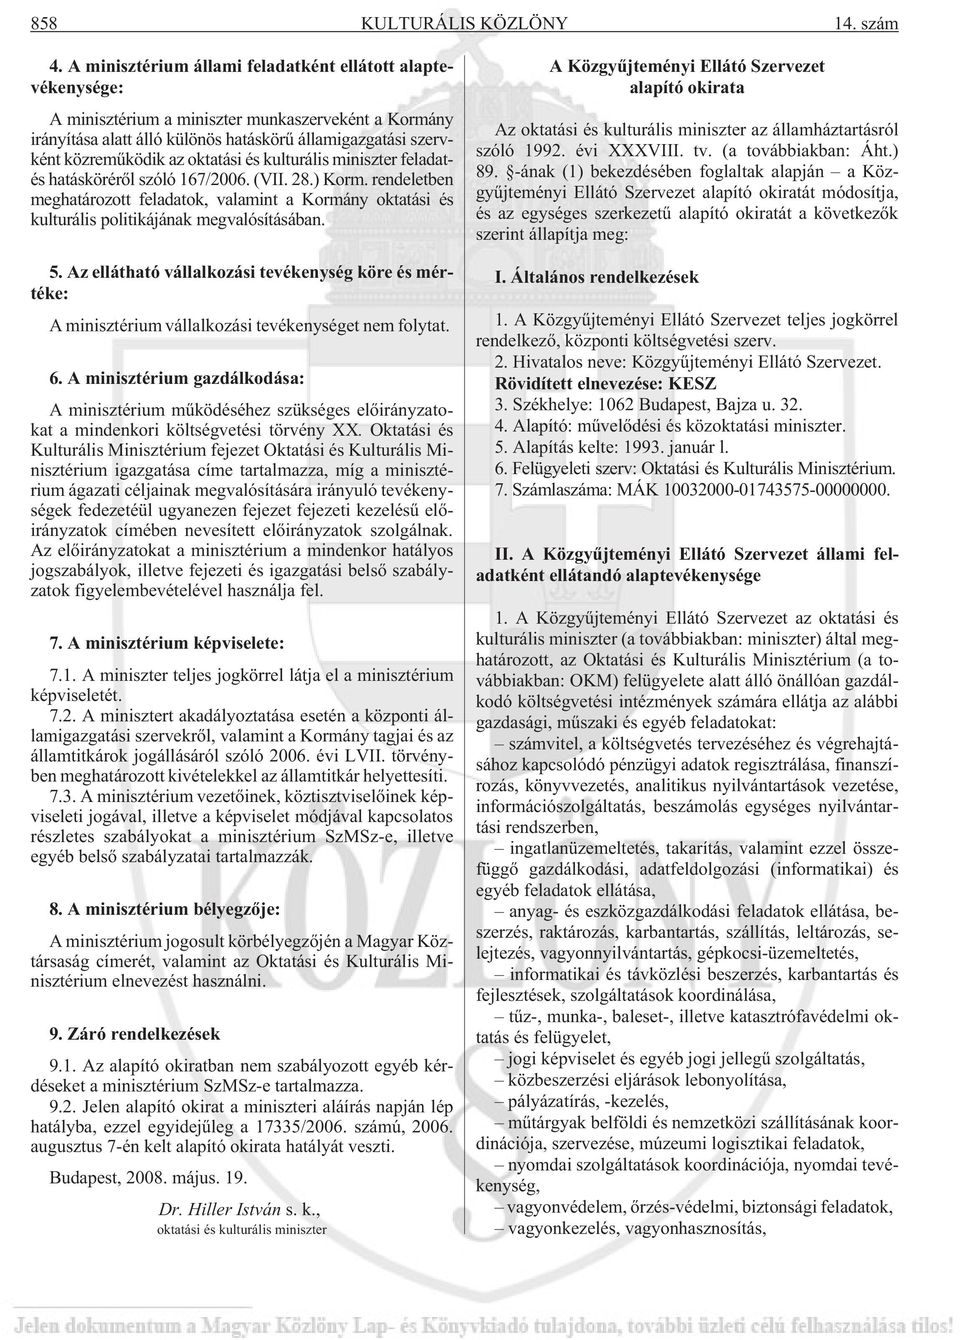 oktatási és kulturális miniszter feladatés hatáskörérõl szóló 167/2006. (VII. 28.) Korm. rendeletben meghatározott feladatok, valamint a Kormány oktatási és kulturális politikájának megvalósításában.